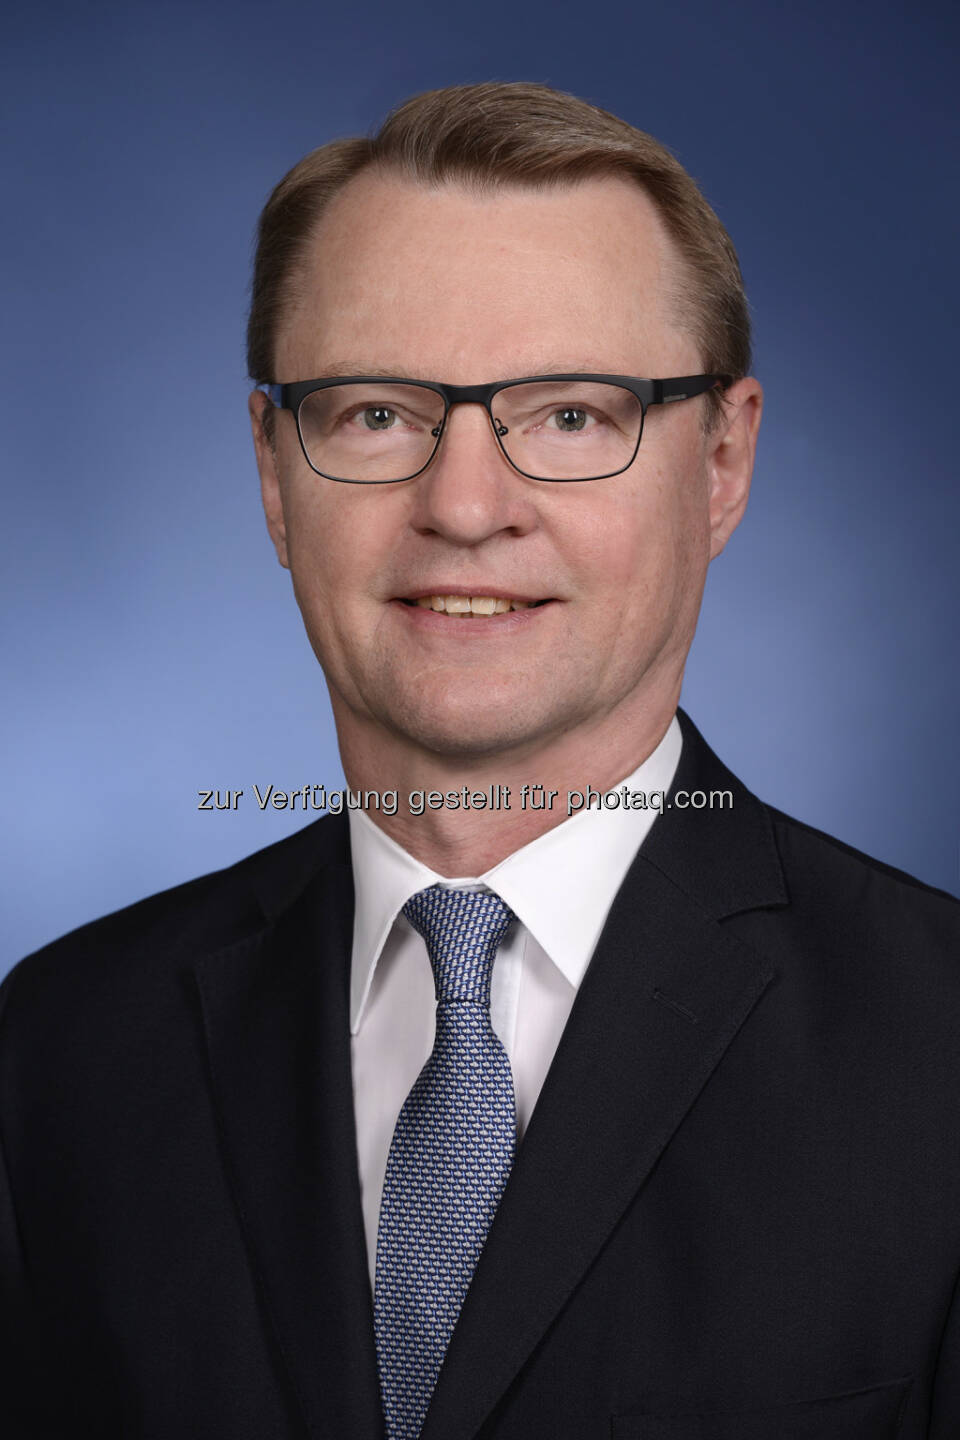 Rainer Jakubowski übernimmt das Vorstandsmandat per 15. September 2014 - Aufsichtsrat der Hypo Alpe Adria bestellt neuen Chief Risk Officer